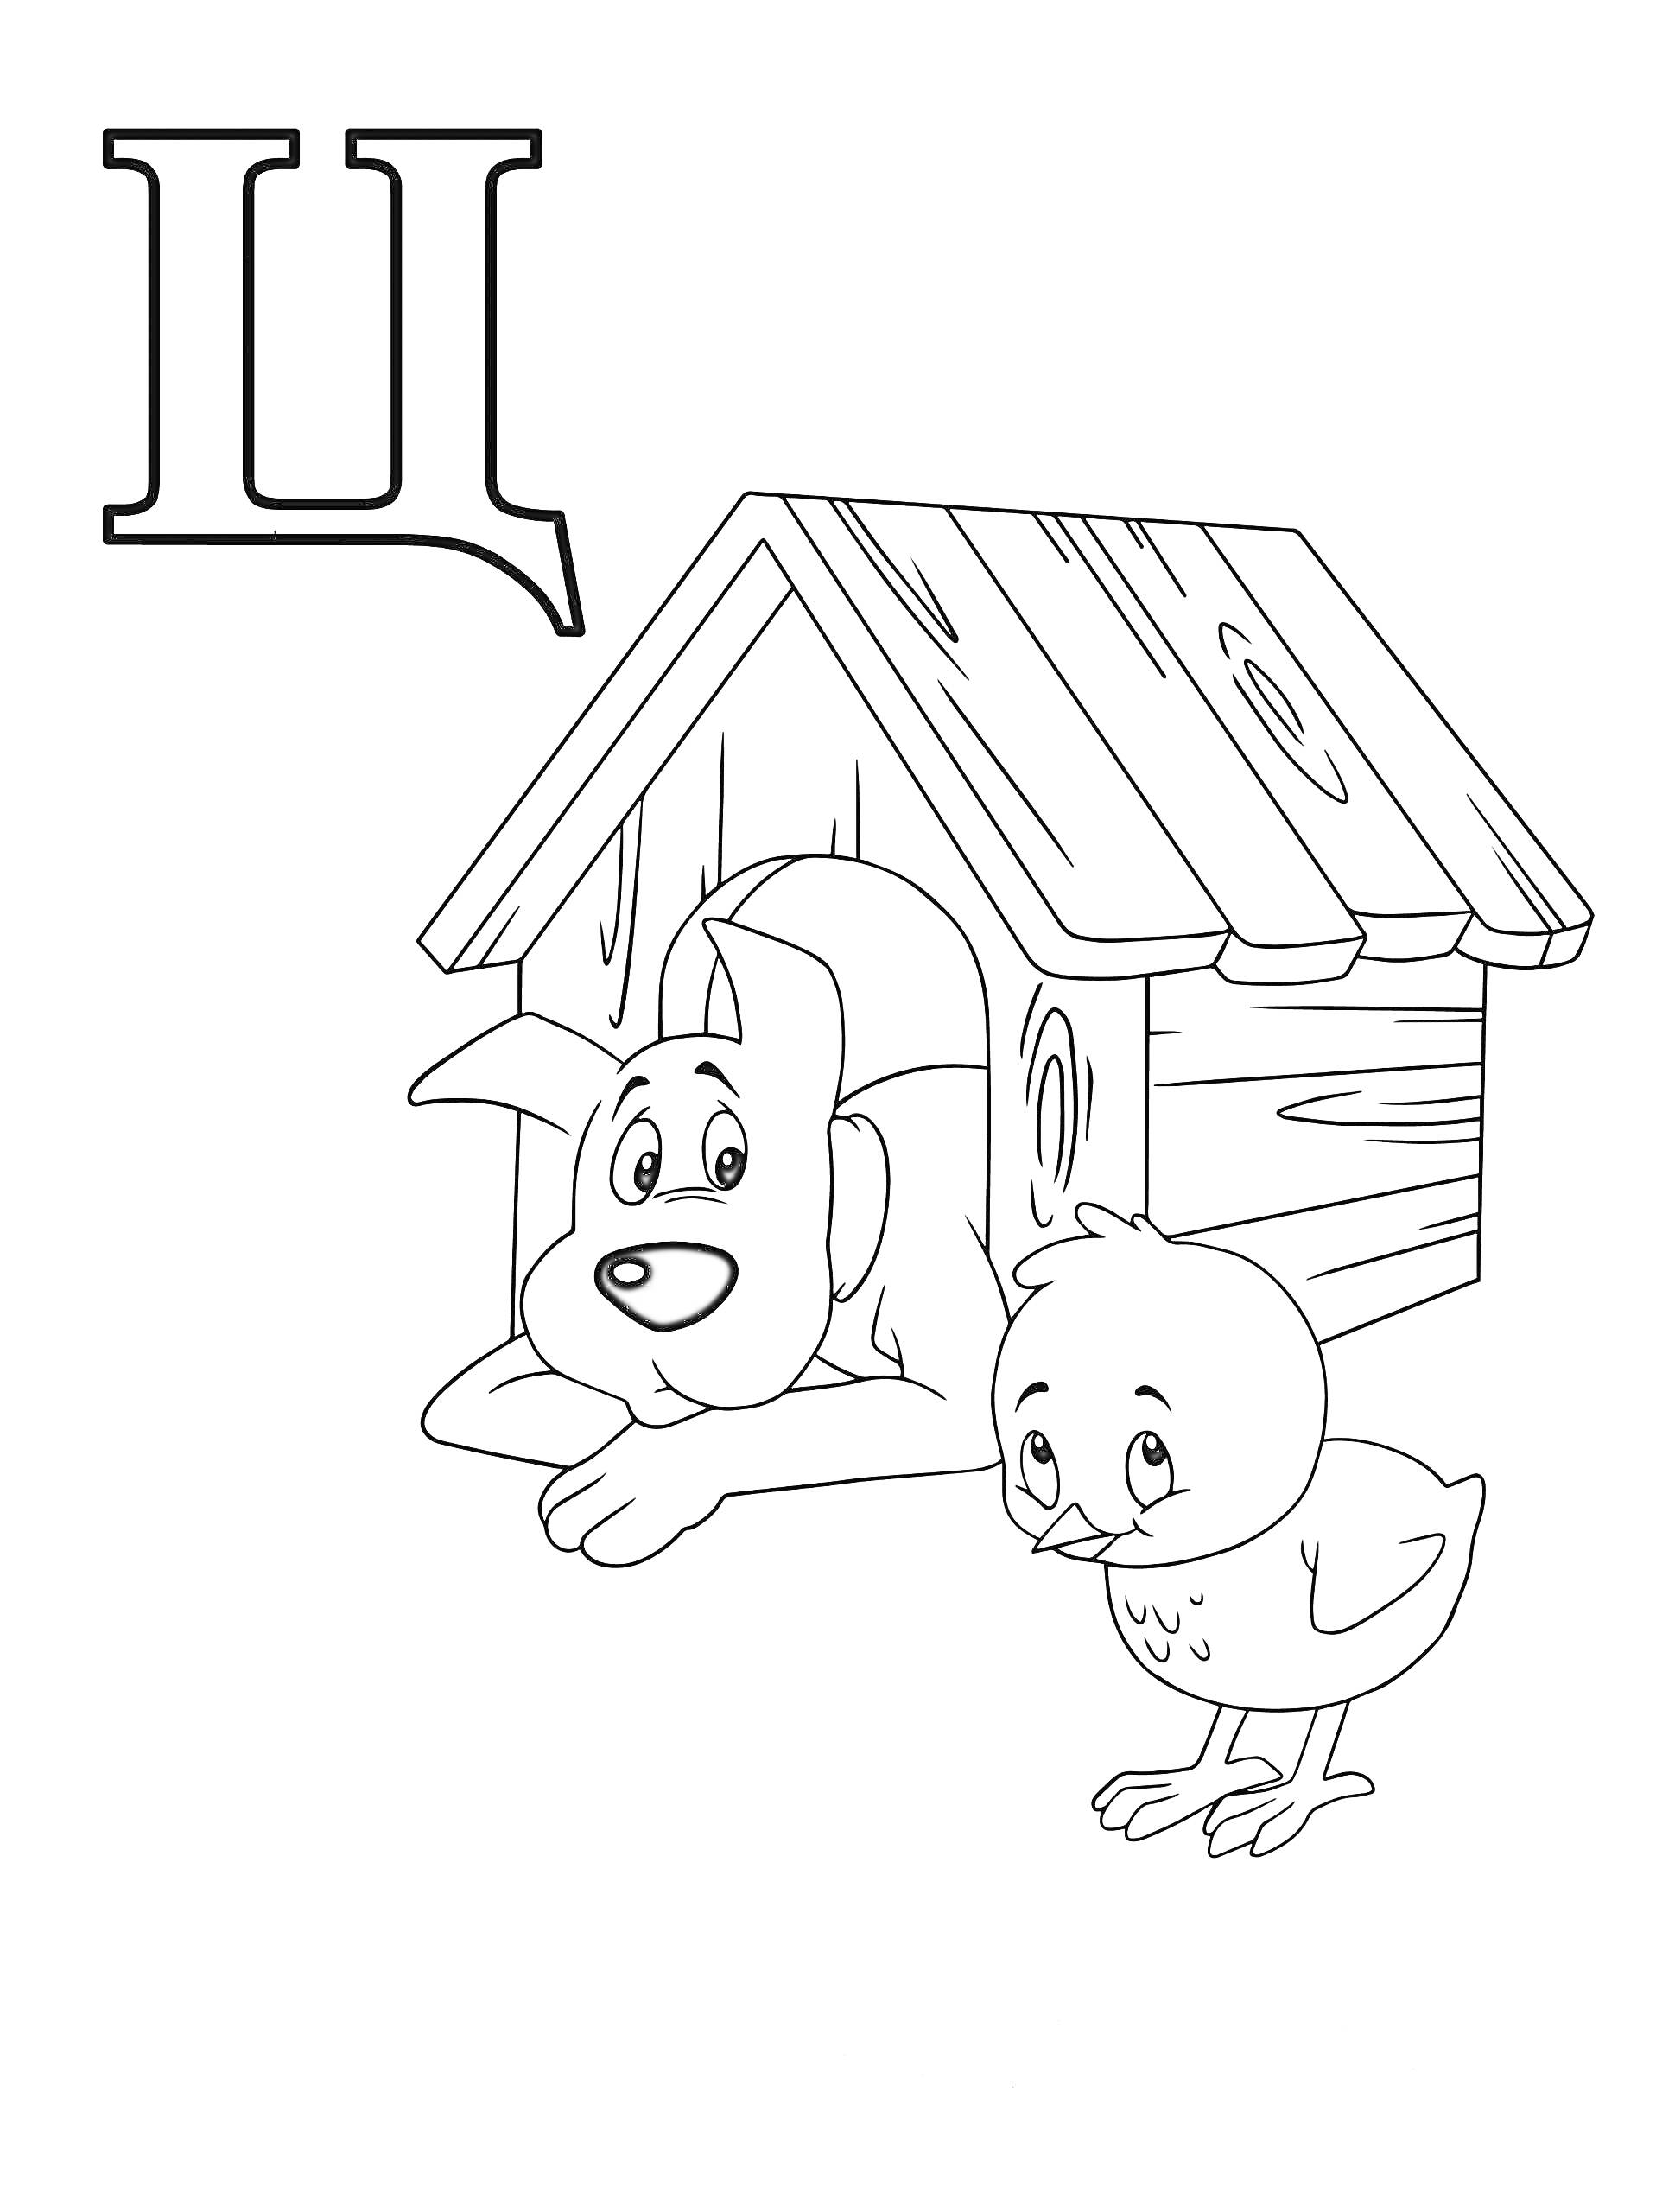 Раскраска Буква Ц с изображением собаки у будки и цыпленка